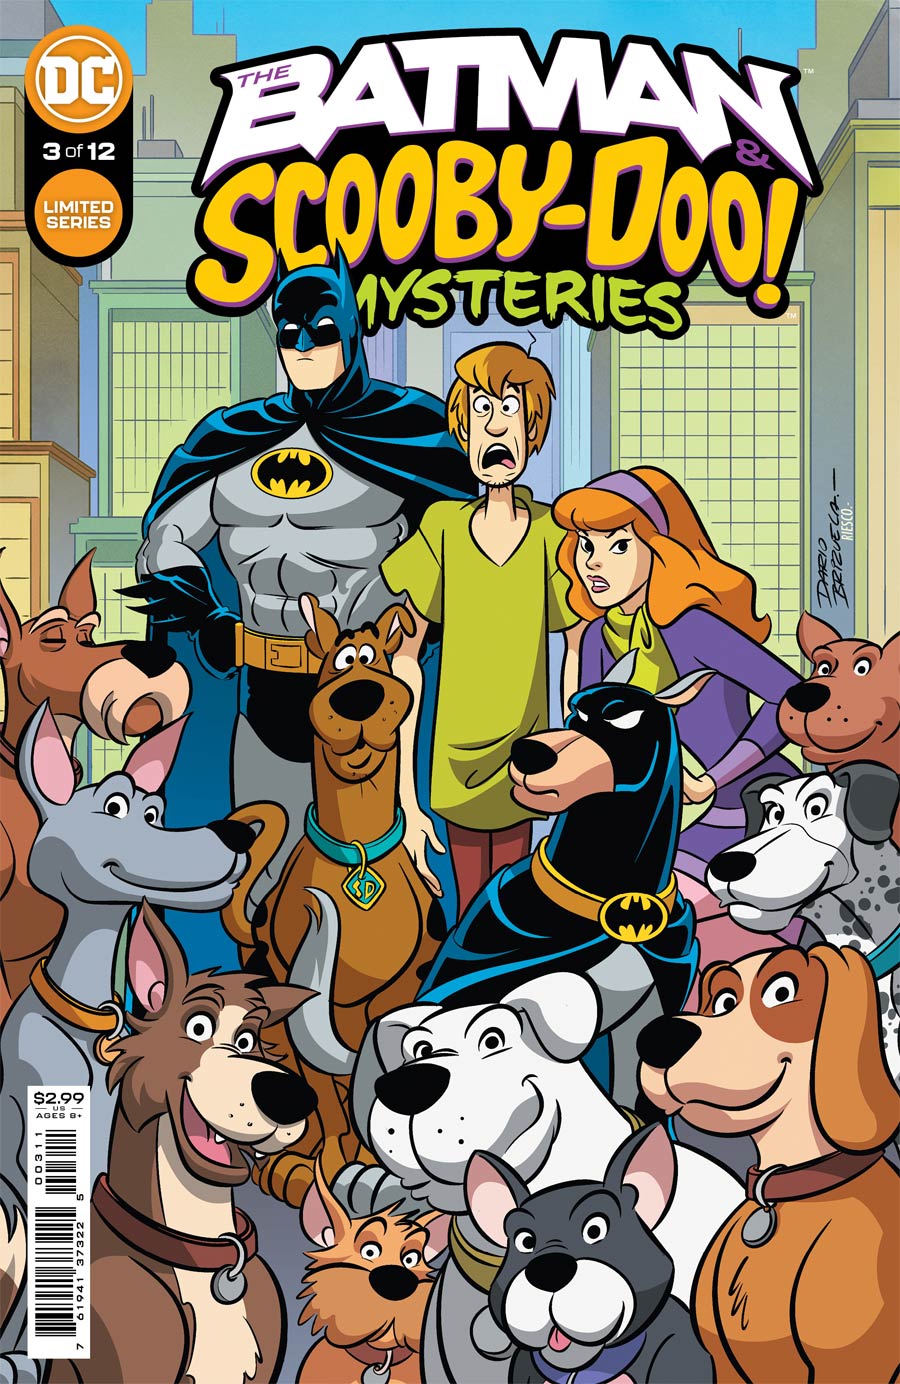 Batman & Scooby-Doo Mysteries #3